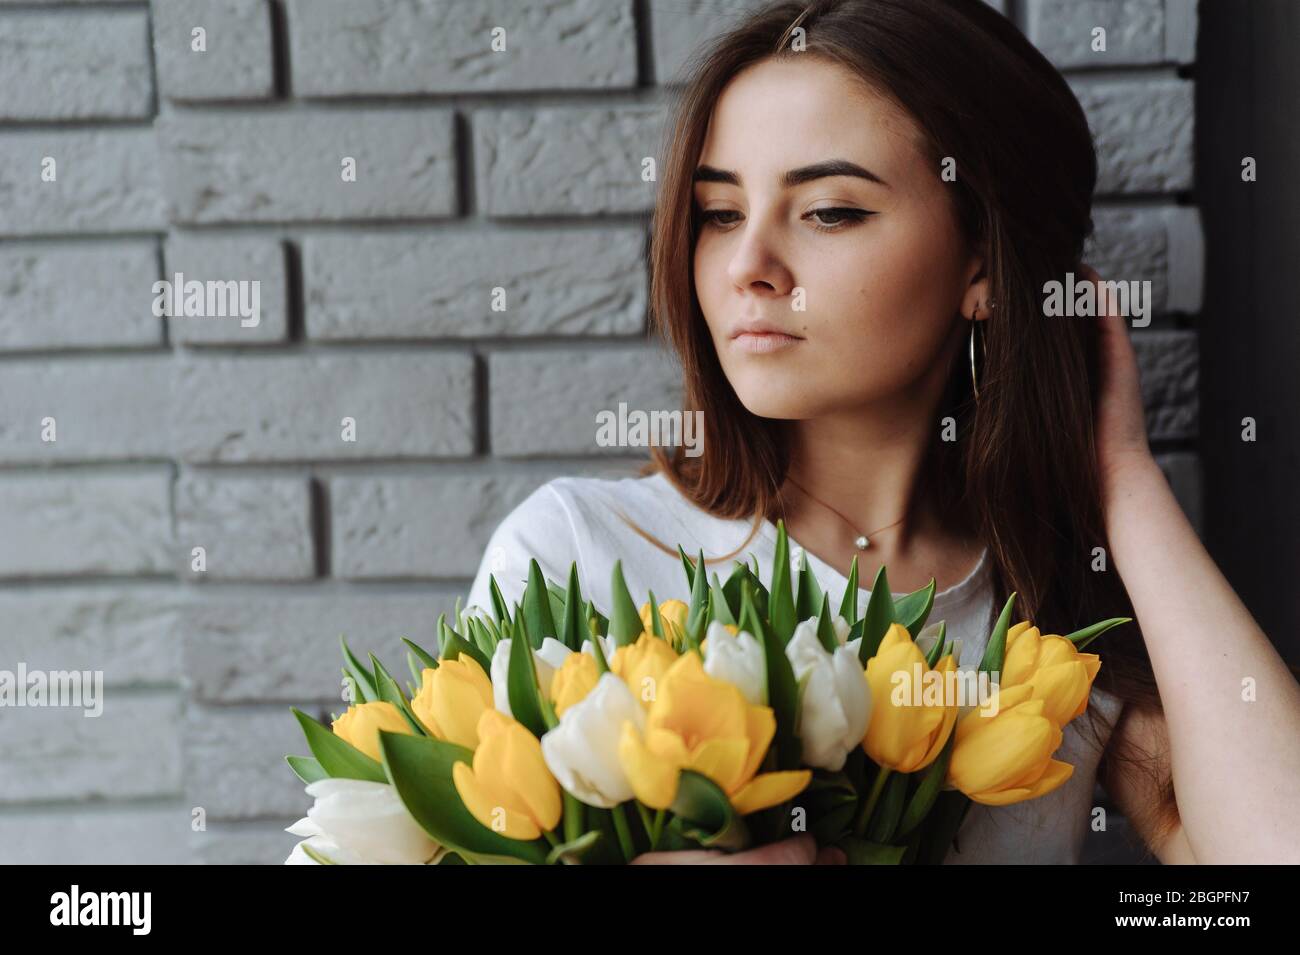 Fille avec cheveux foncés tenant le bouquet de tulipes dans sa main Banque D'Images